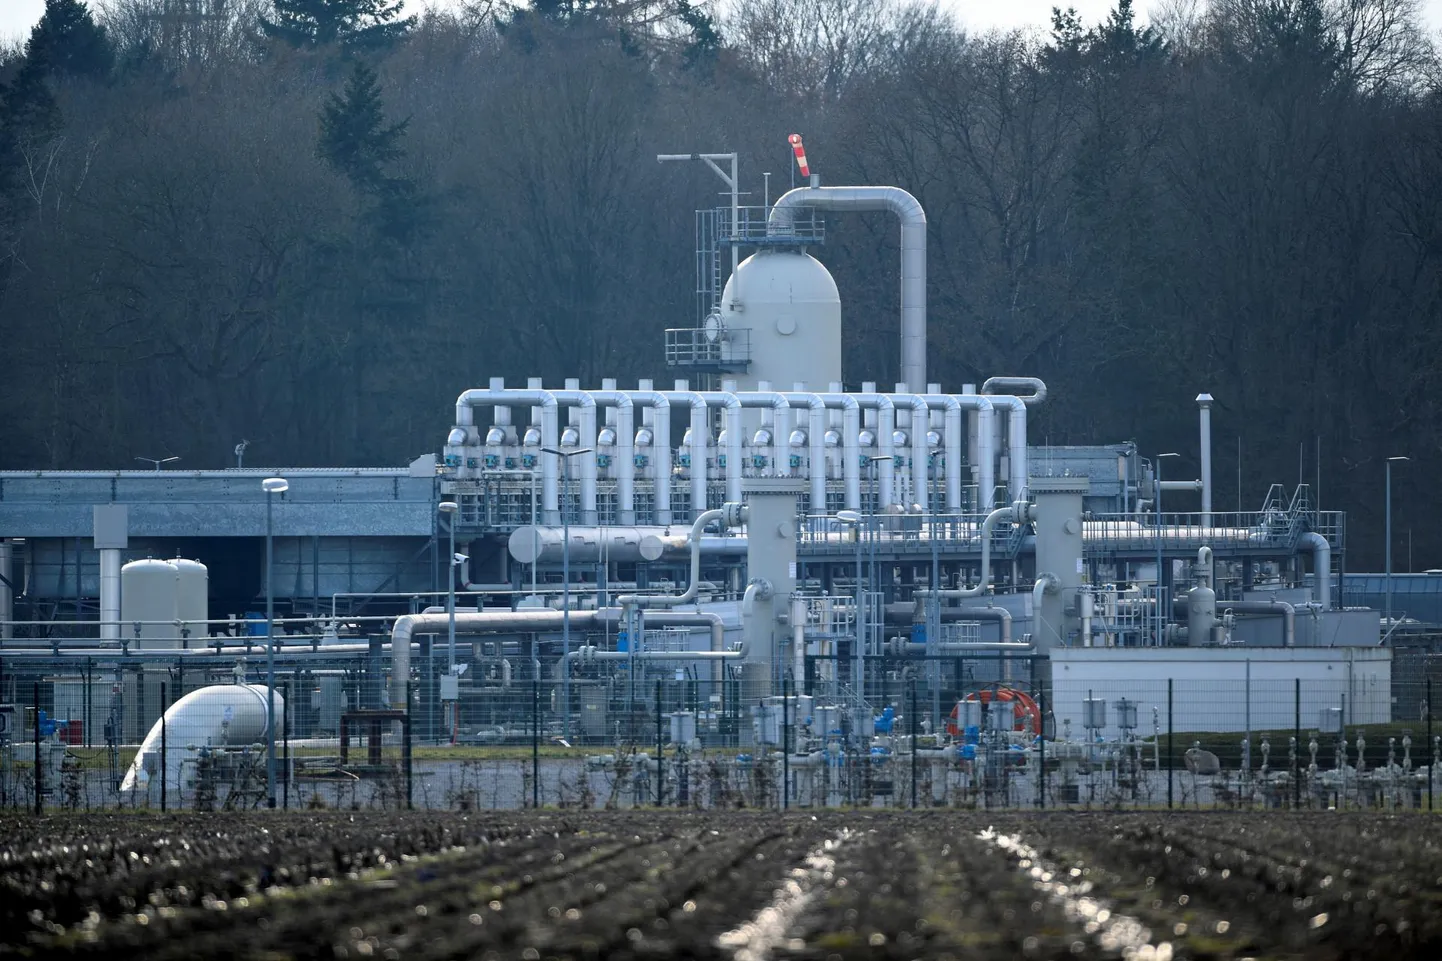 Pildil Lääne-Euroopa suurim maagaasihoidla Astora Saksamaal Rehdenis. Astora kuulub Vene gaasifirma Gazprom harufirmale Gazprom Germania Group.